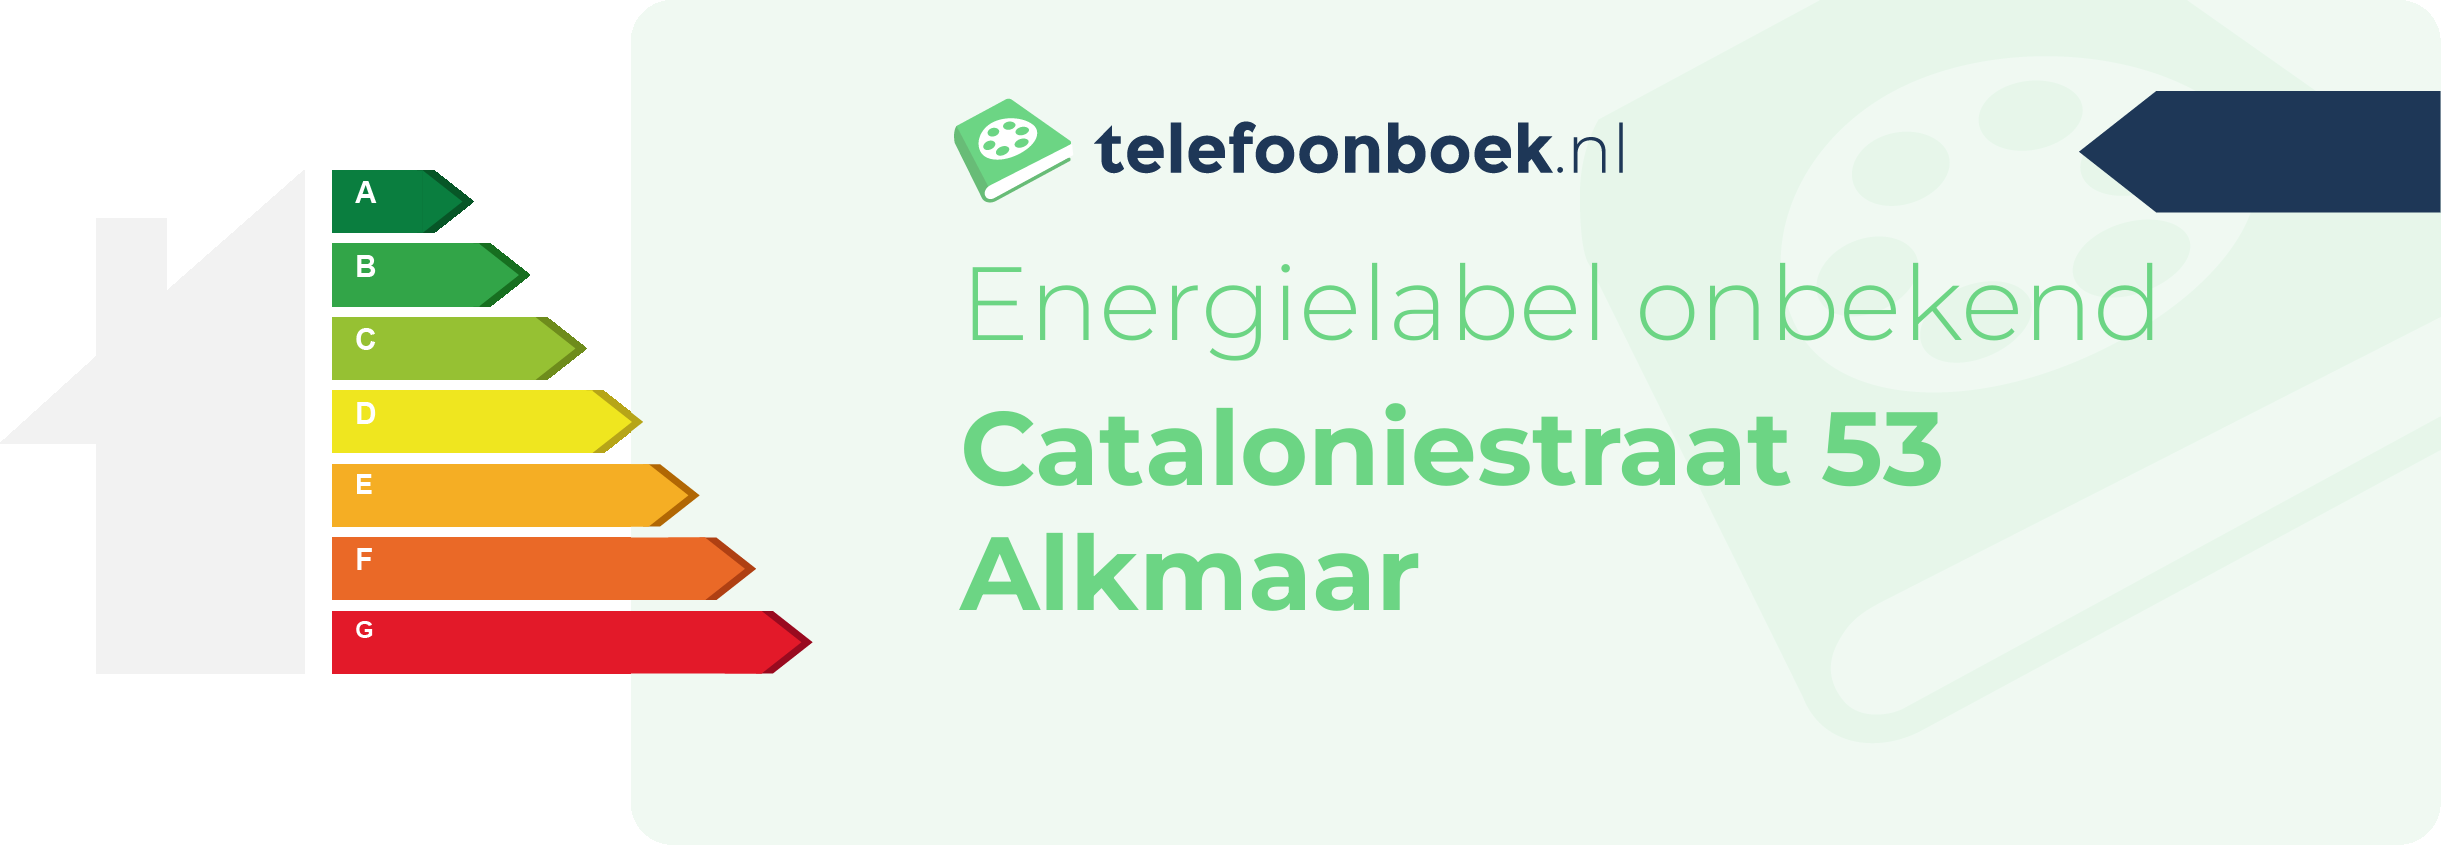 Energielabel Cataloniestraat 53 Alkmaar